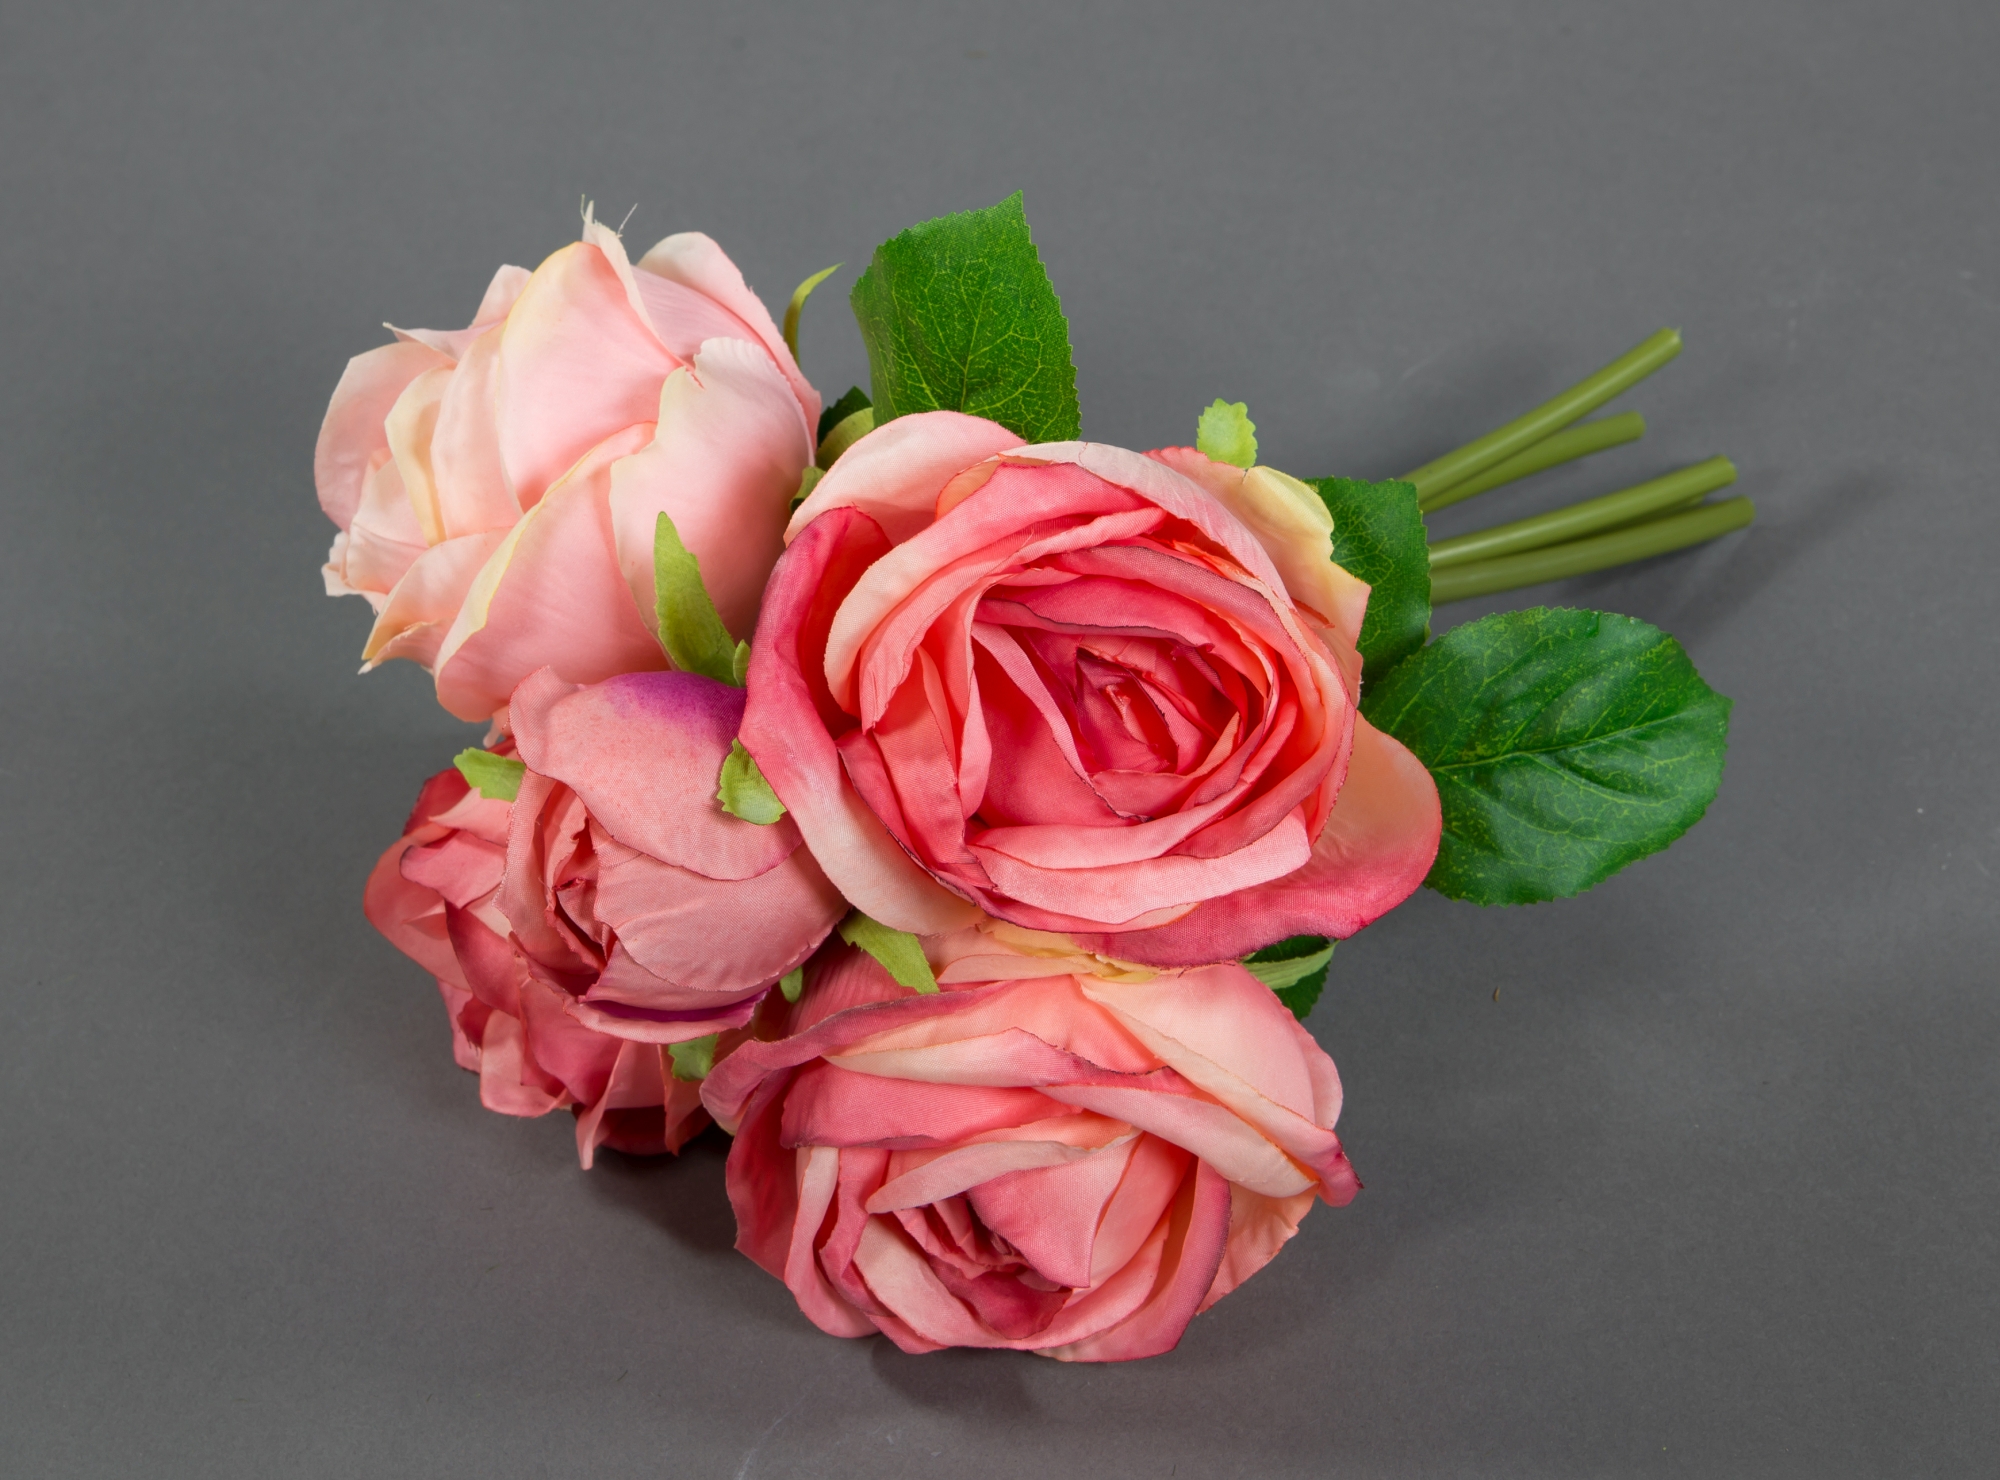 Strauß 28x20cm Kunstblumen Rosenstrauß Blumenstrauß rosa-pink FT künstliche Rosen Blumen